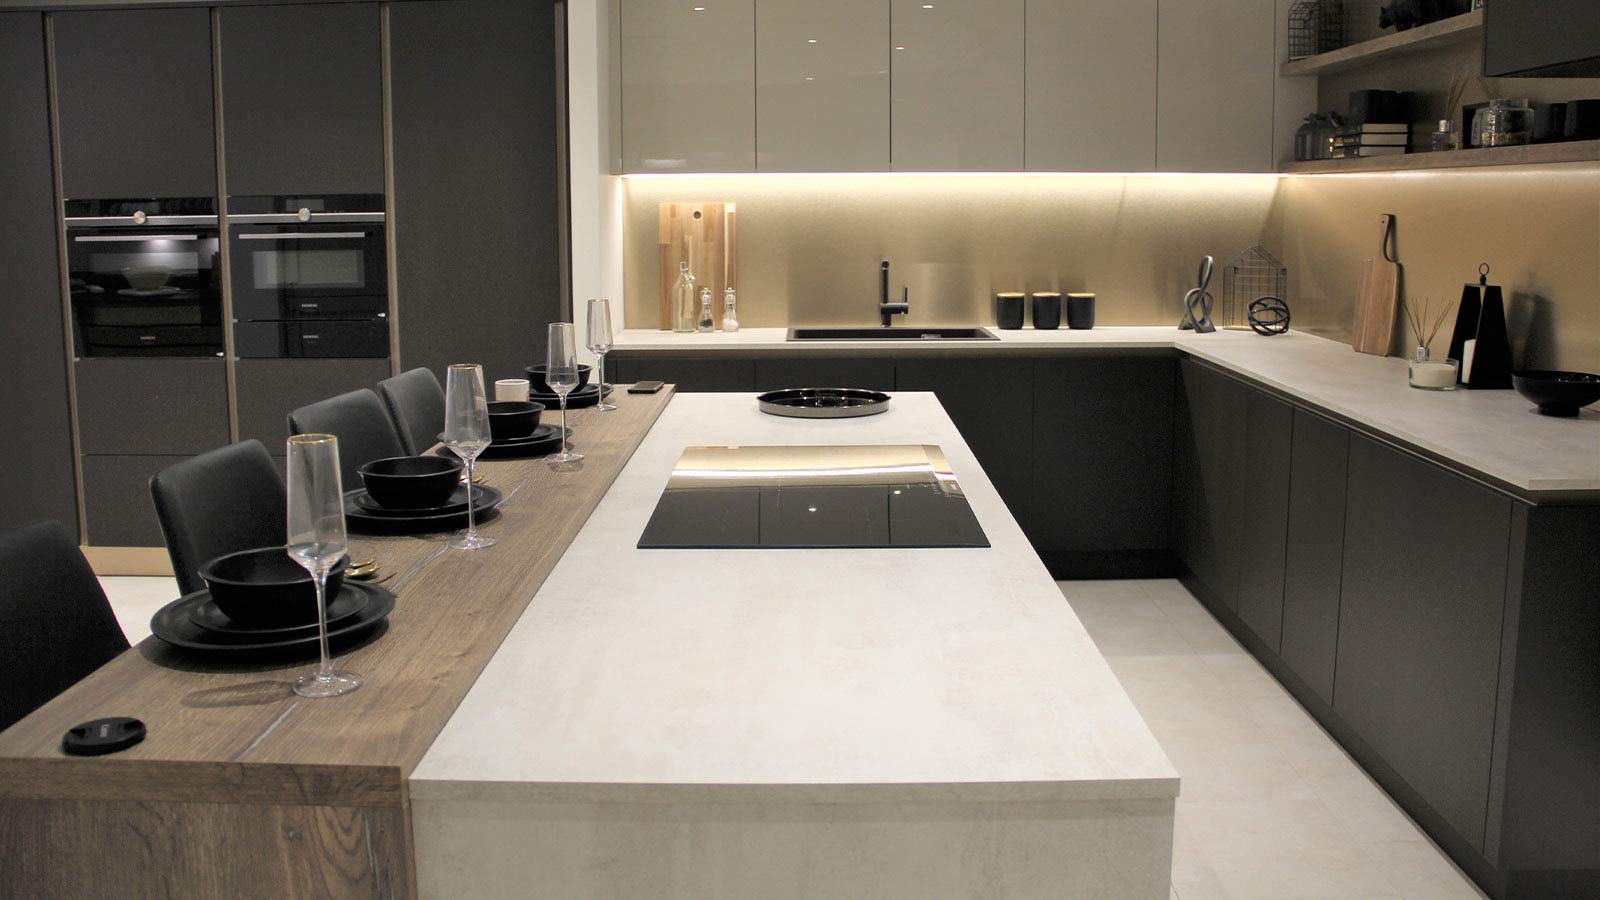 Modern kitchen worktops in a modern luxury kitchen